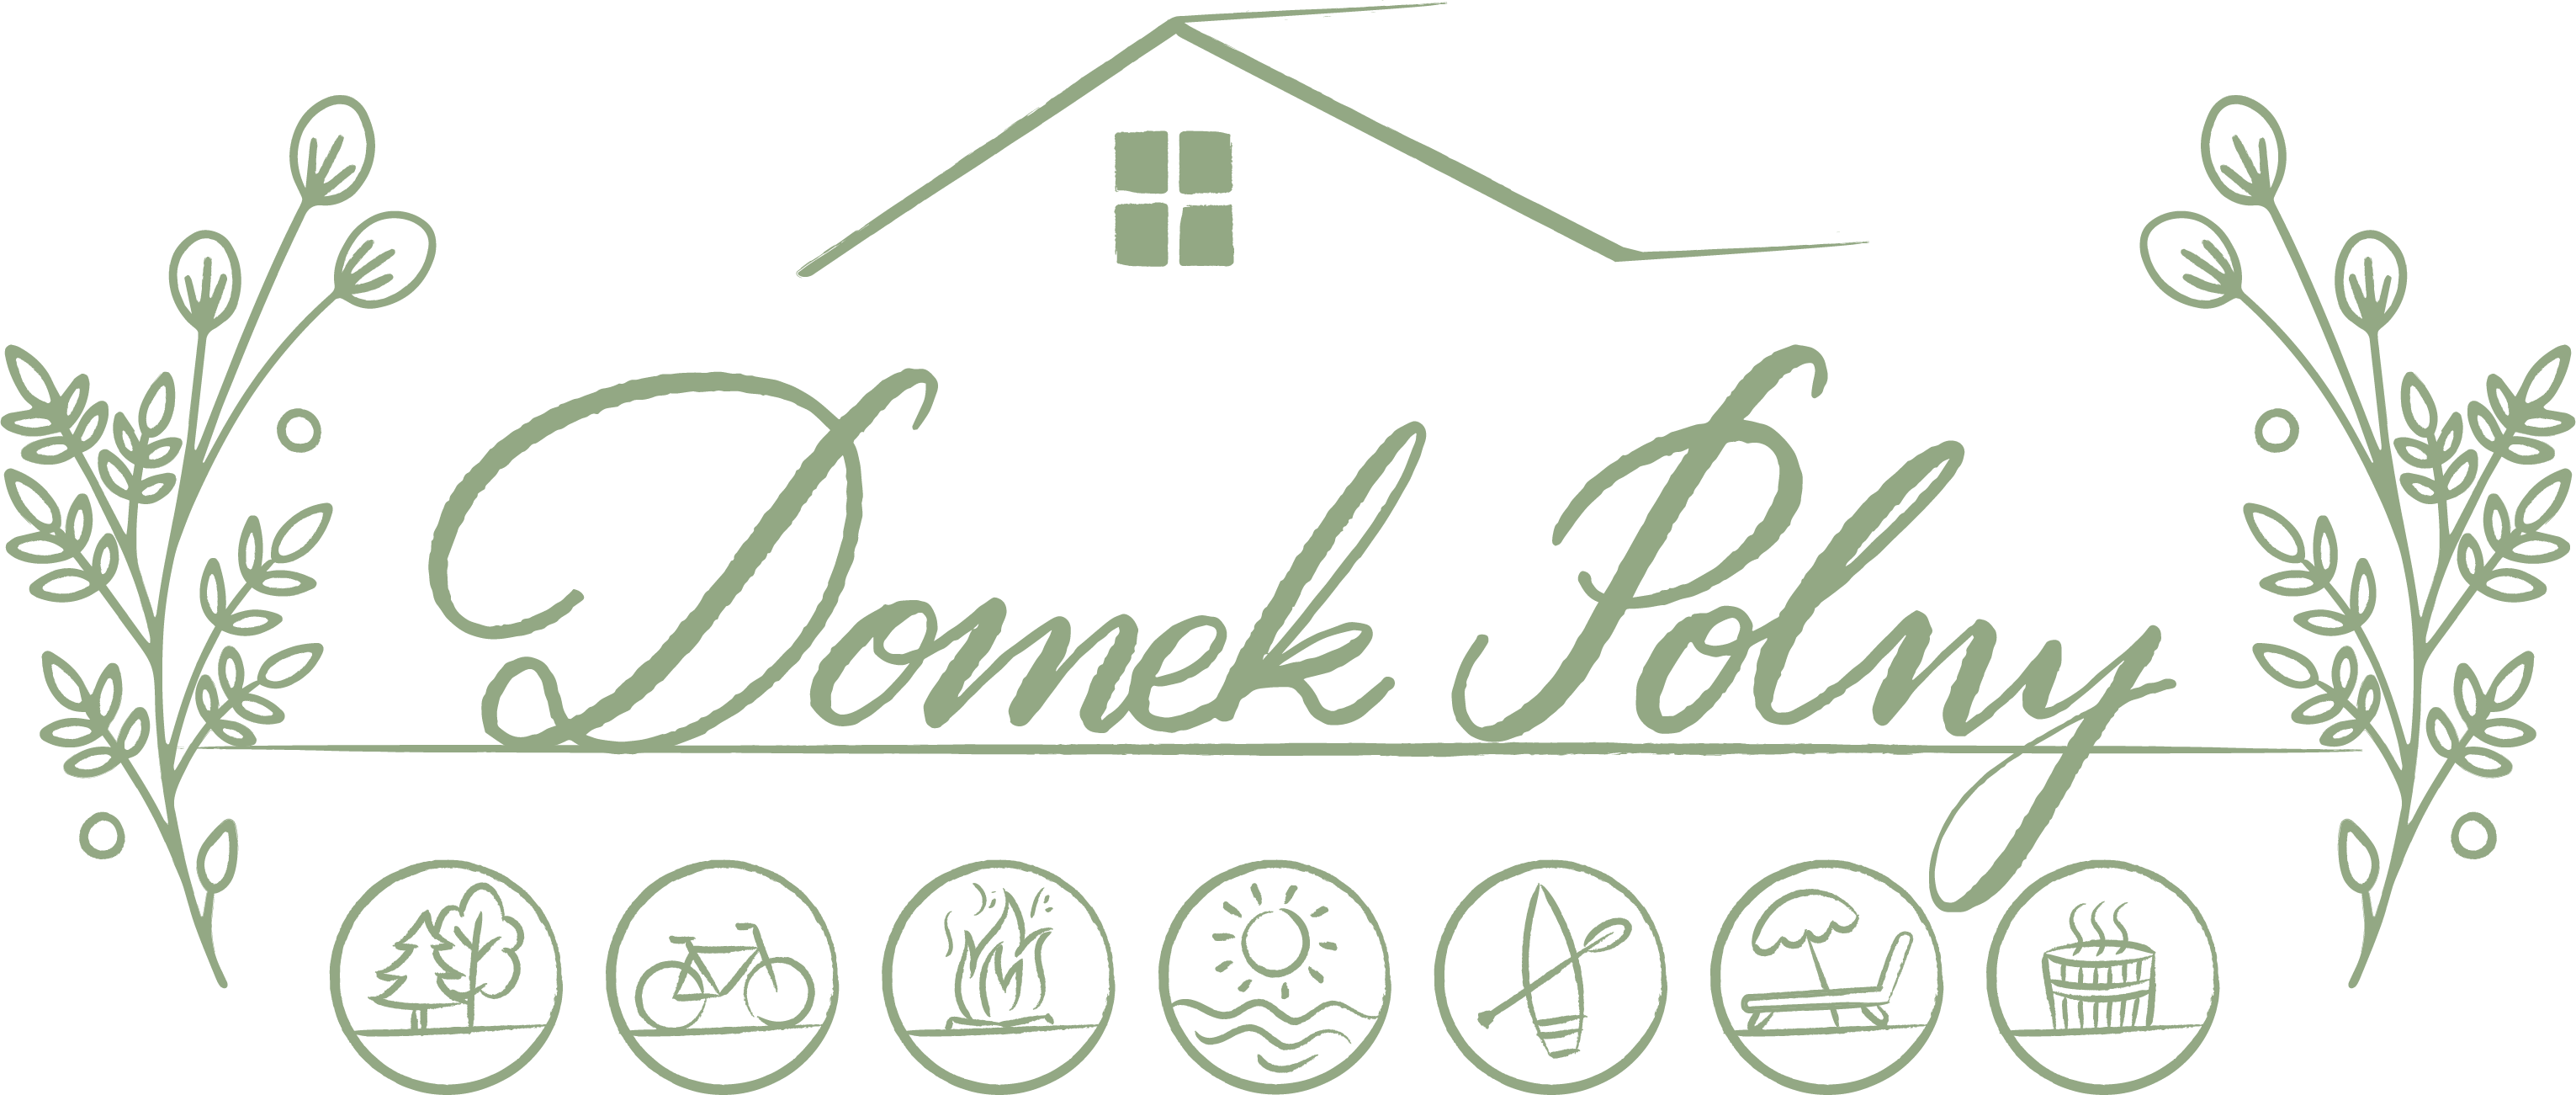 Domek_Poly_logo_green